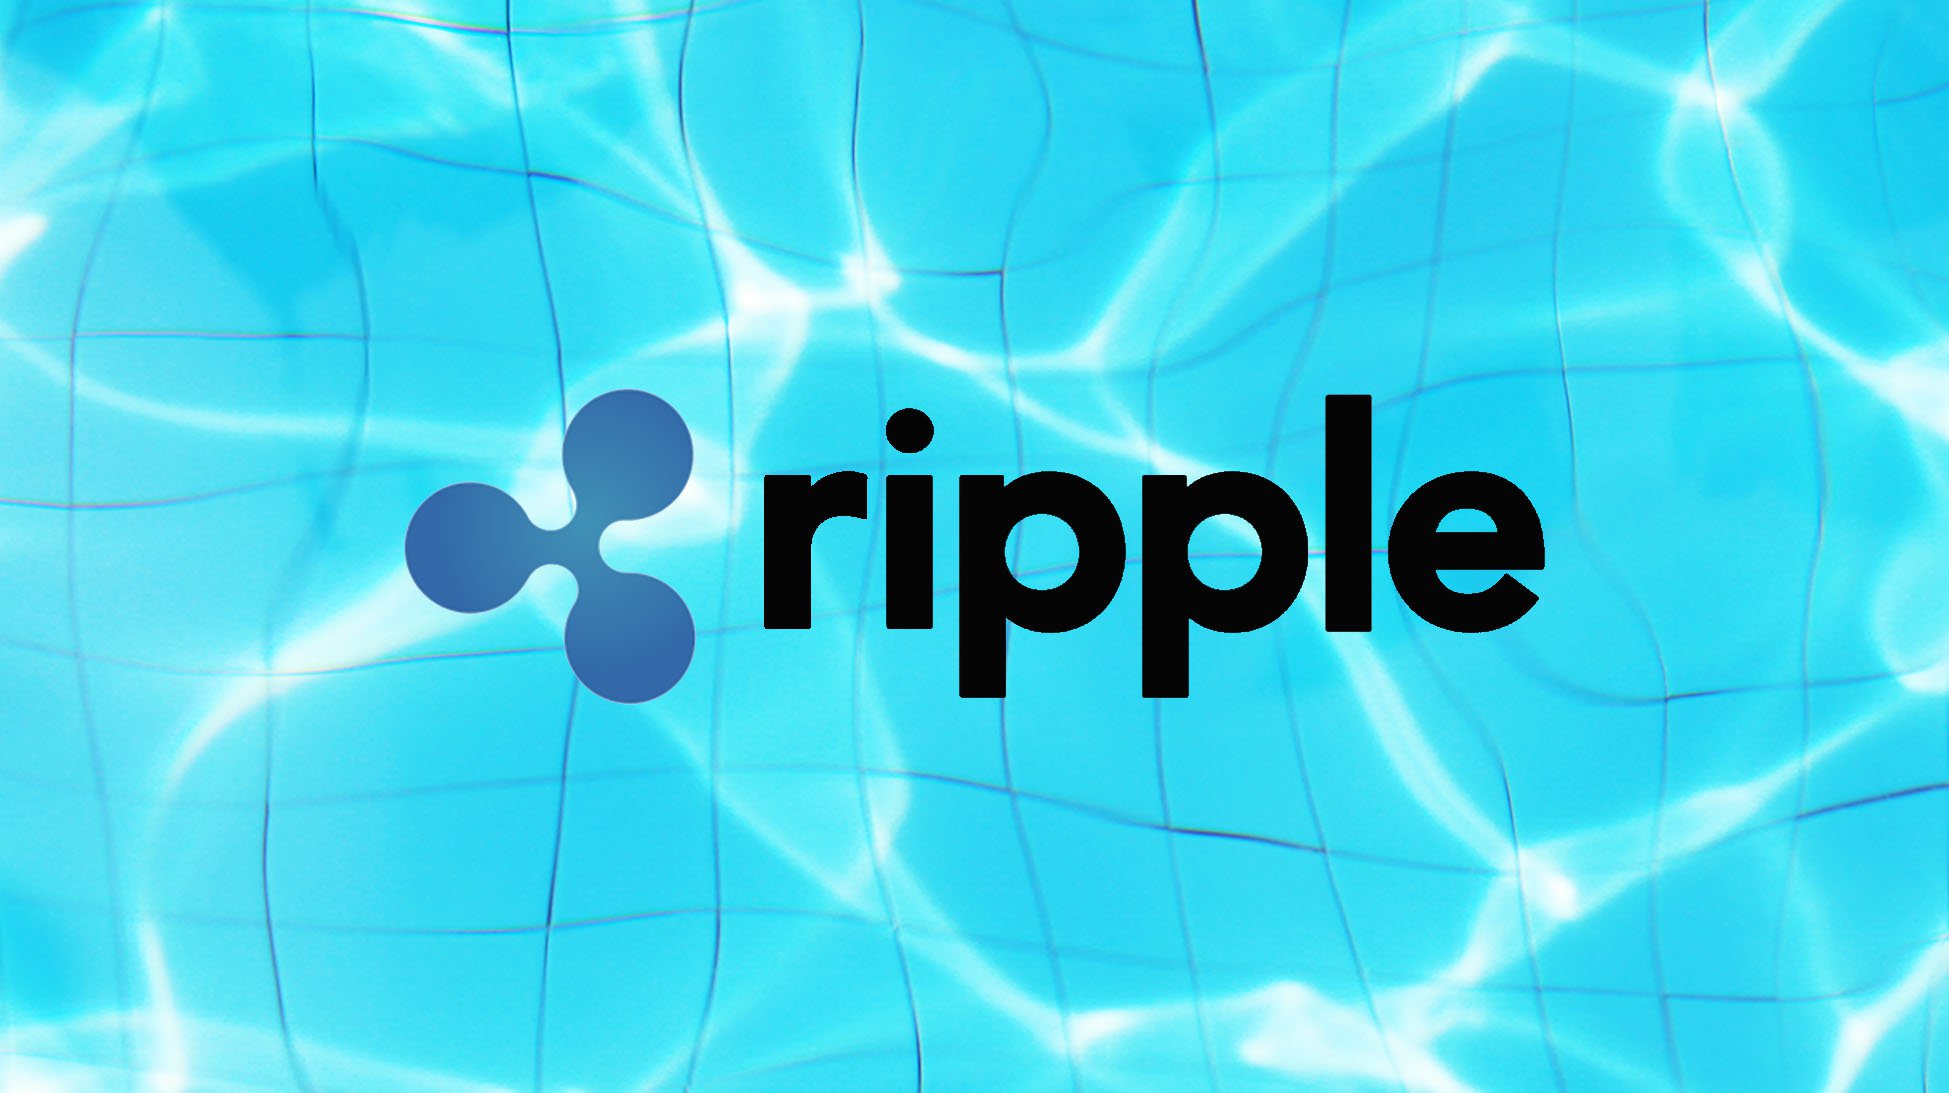 Ripple CEO称可能在12个月内完成IPO